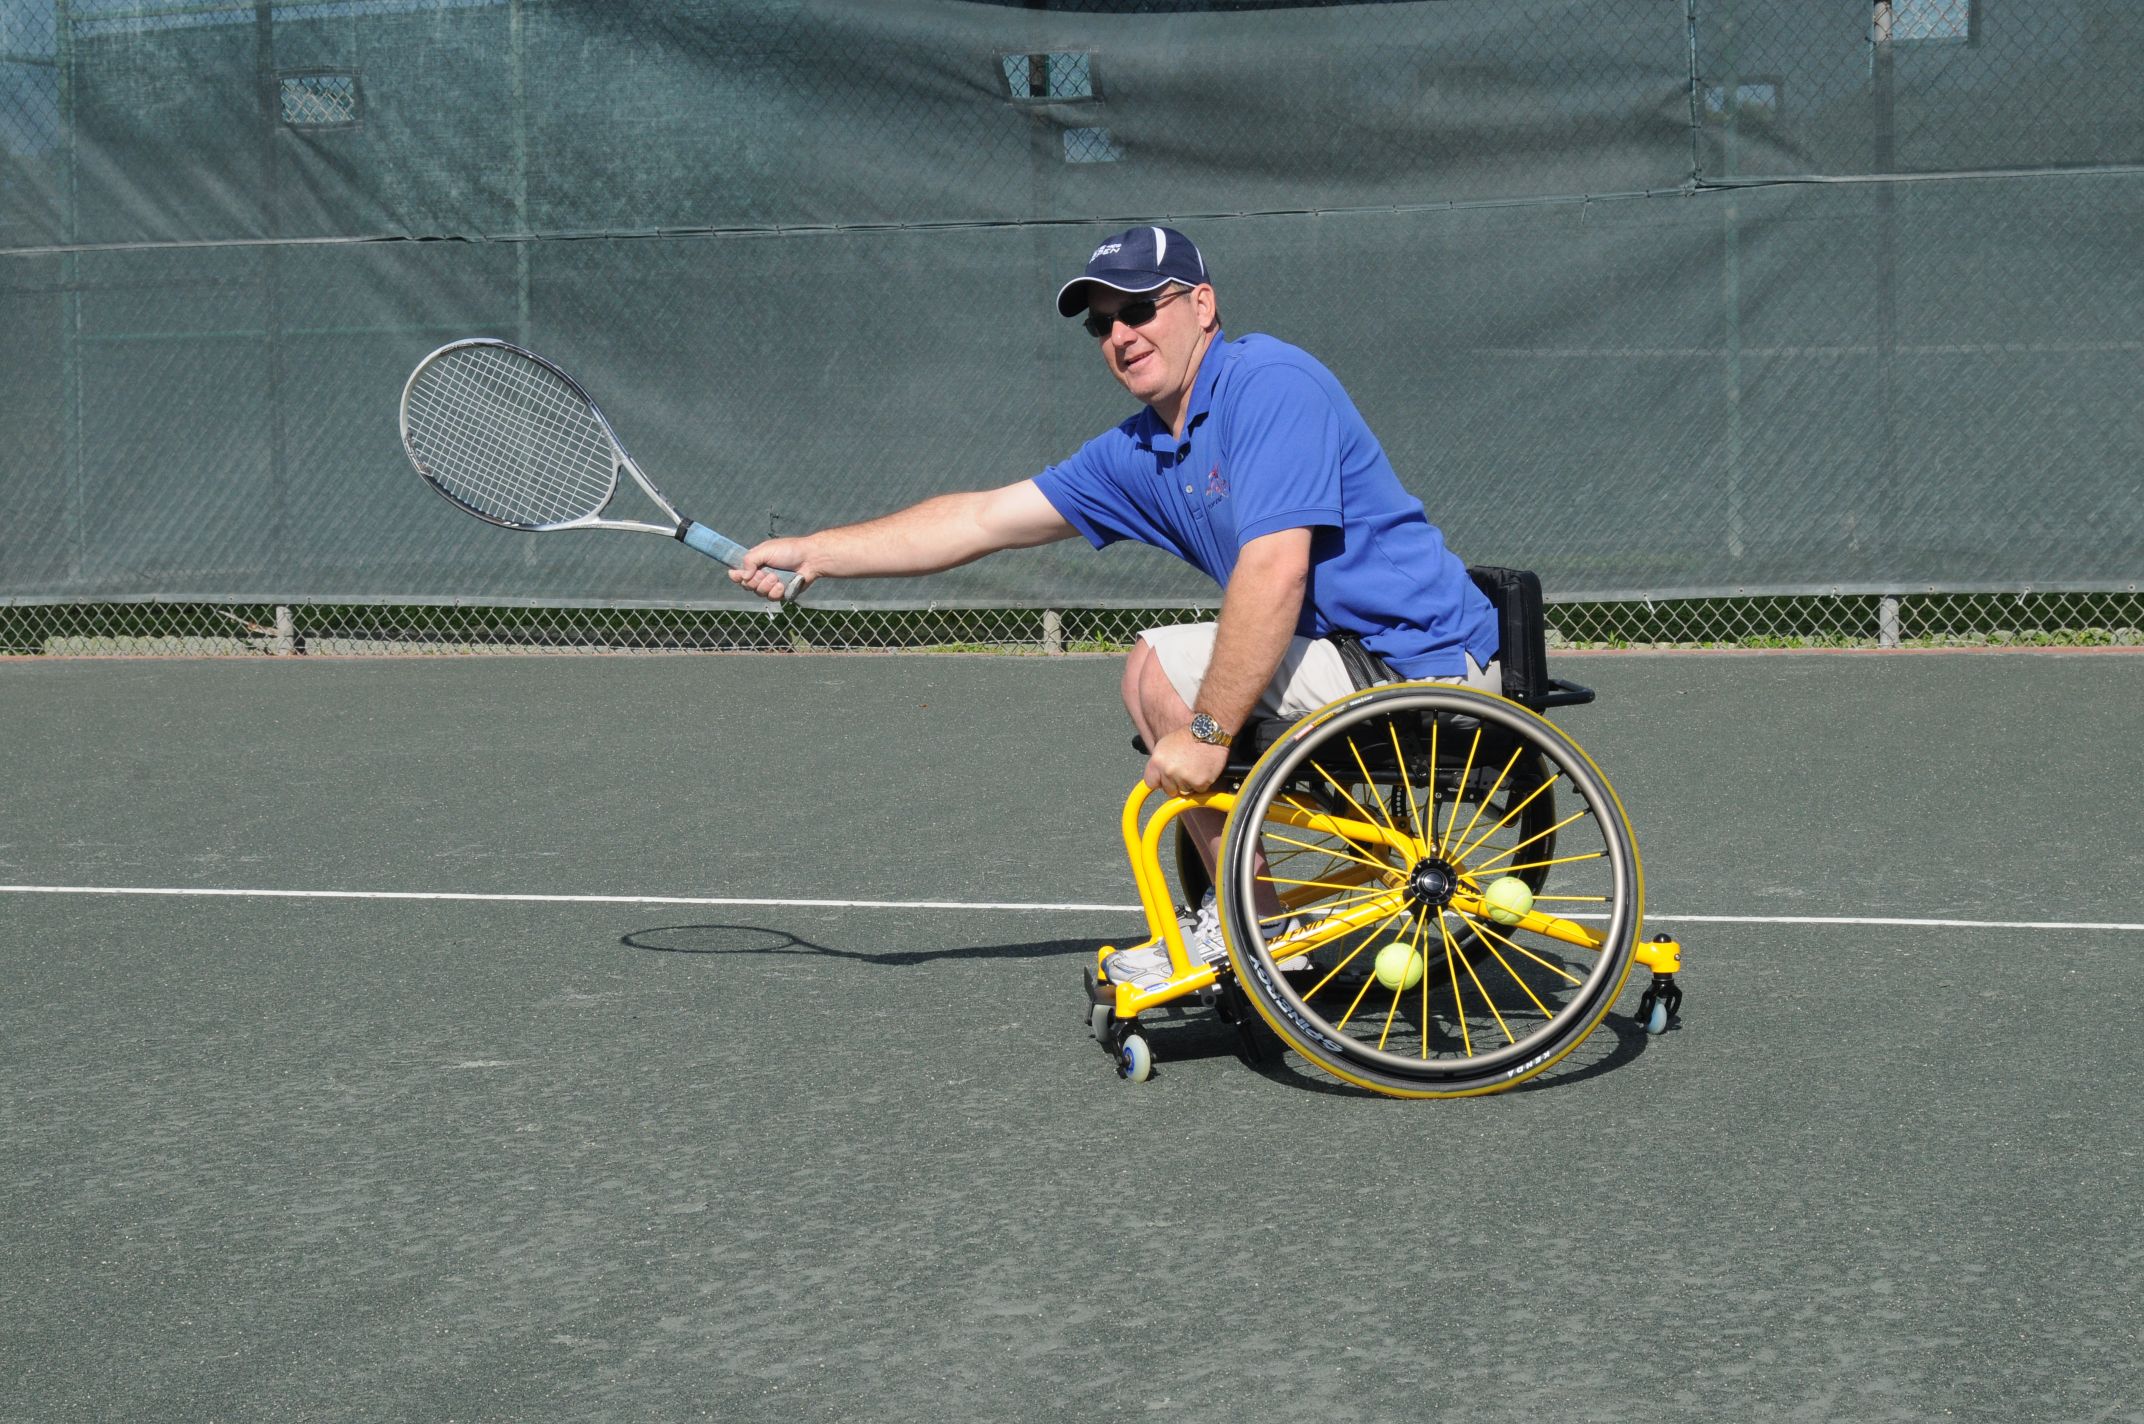 Gardez la forme avec les équipements sportifs spécialement conçus pour les personnes Gardez la forme avec les équipements sportifs spécialement conçus pour les personnes en situation de handicapen situation de handicap